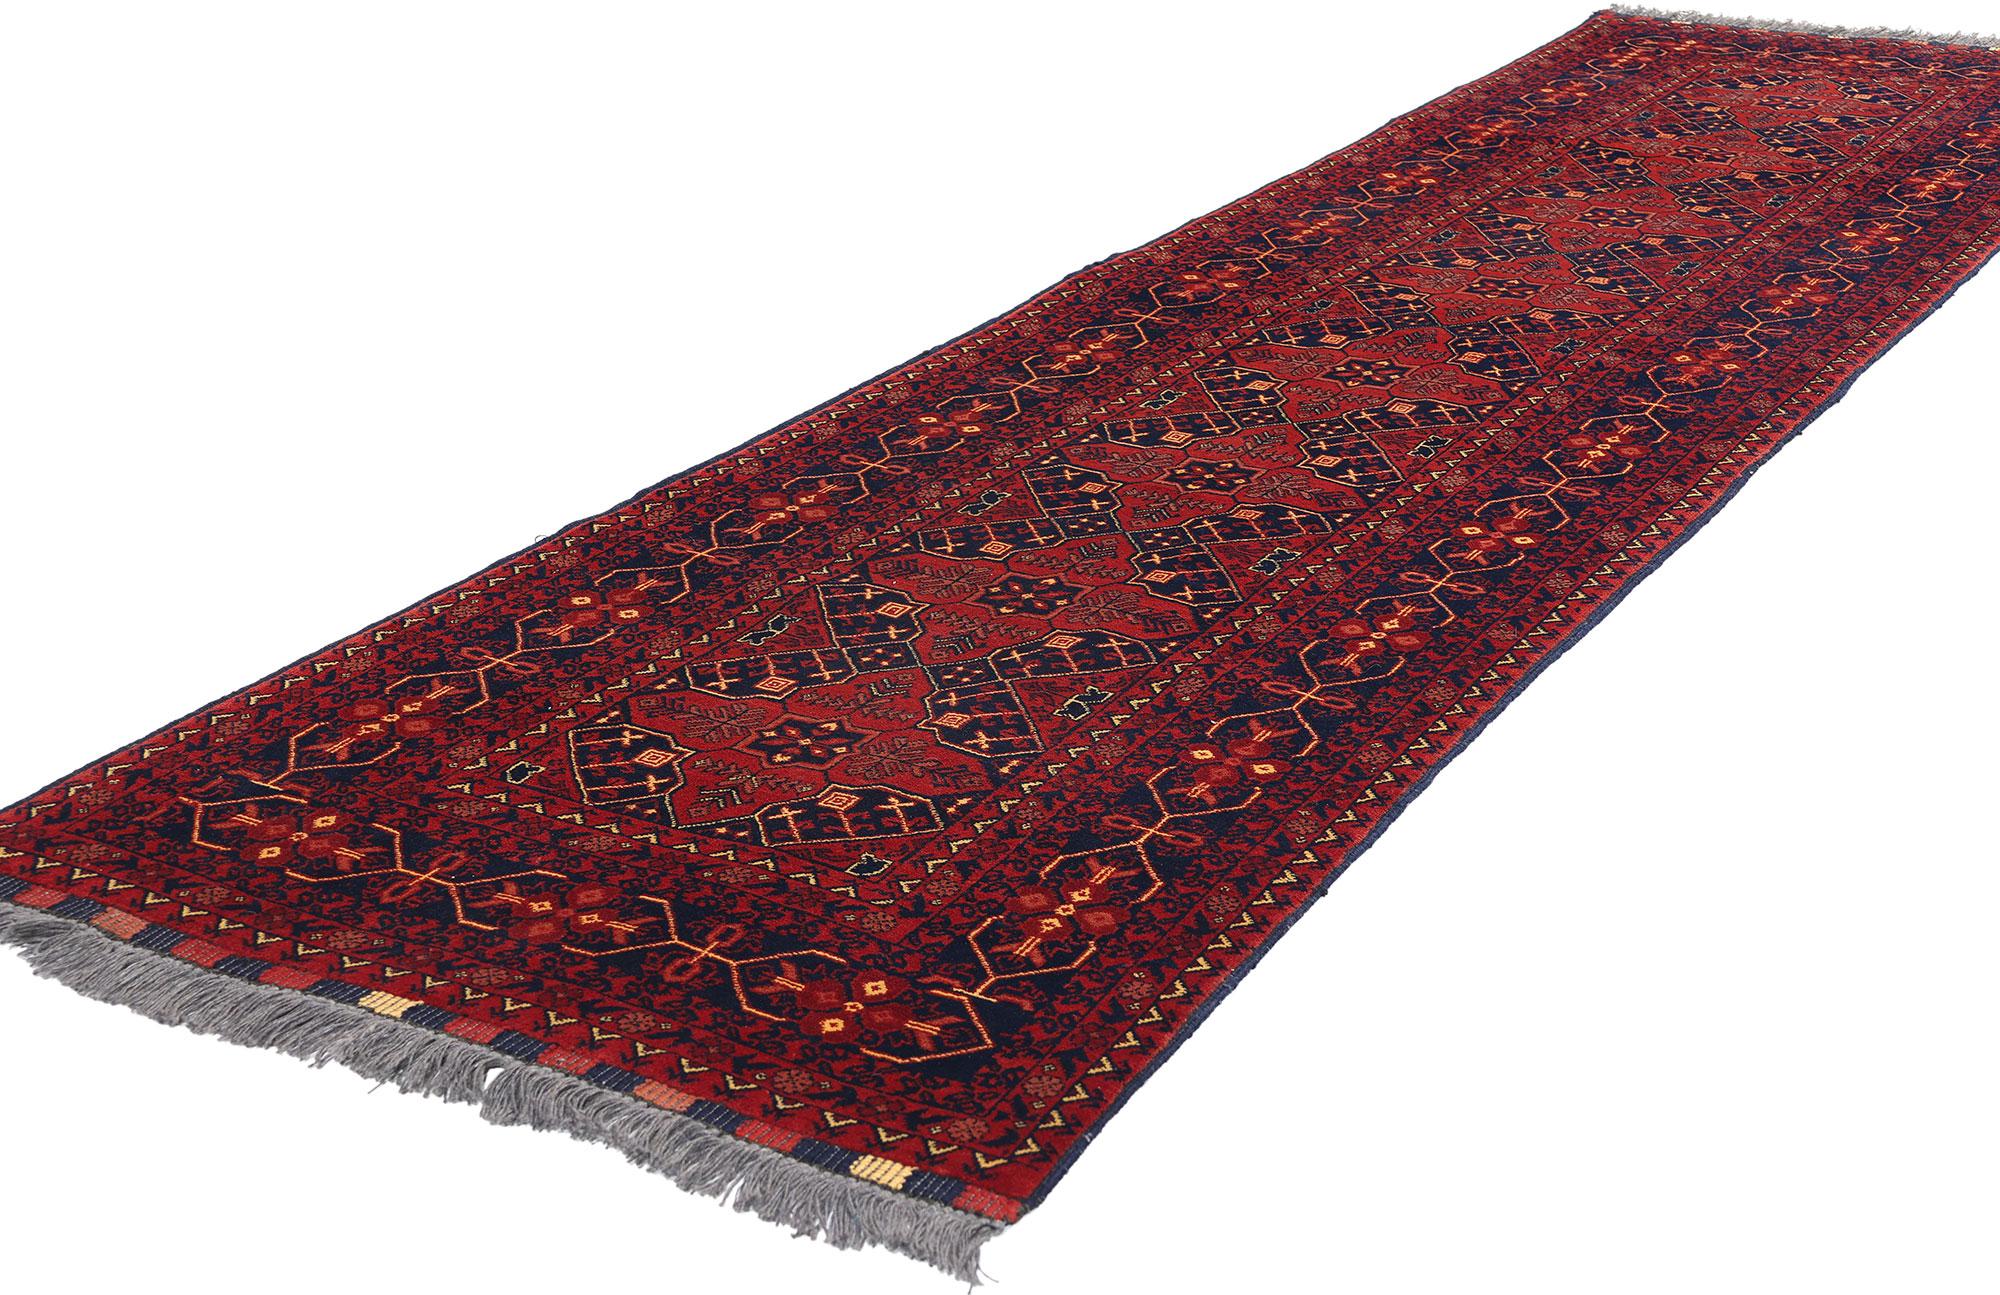 77009 Vintage Afghan Baluch Rug, 02'07 x 09'08. Afghanische Baluch Rugs sind handgewebte Textilien, die von den Baluch-Stämmen in Afghanistan stammen. Diese Teppiche zeichnen sich durch komplizierte Designs, geometrische Muster und erdige Farben wie